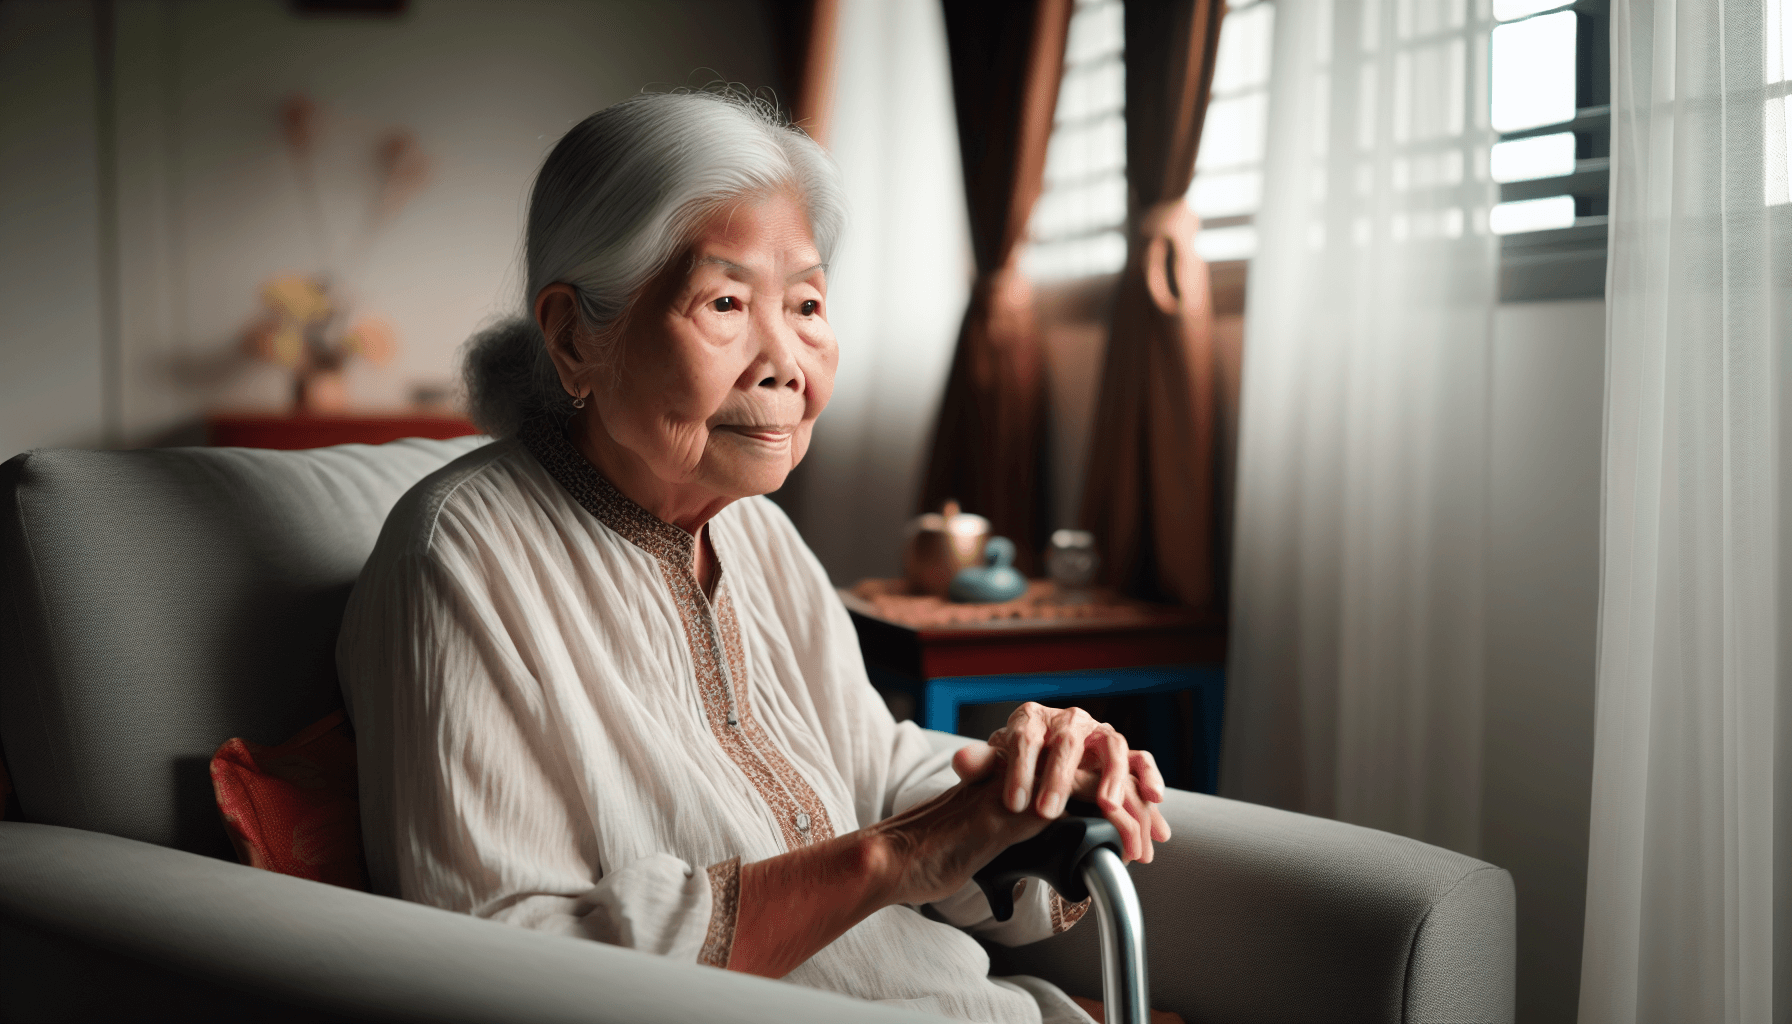 एट्रियल फाइब्रिलेशन जटिलताओं के लिए उम्र को जोखिम कारक के रूप में दर्शाने वाले बुजुर्ग व्यक्ति की तस्वीर